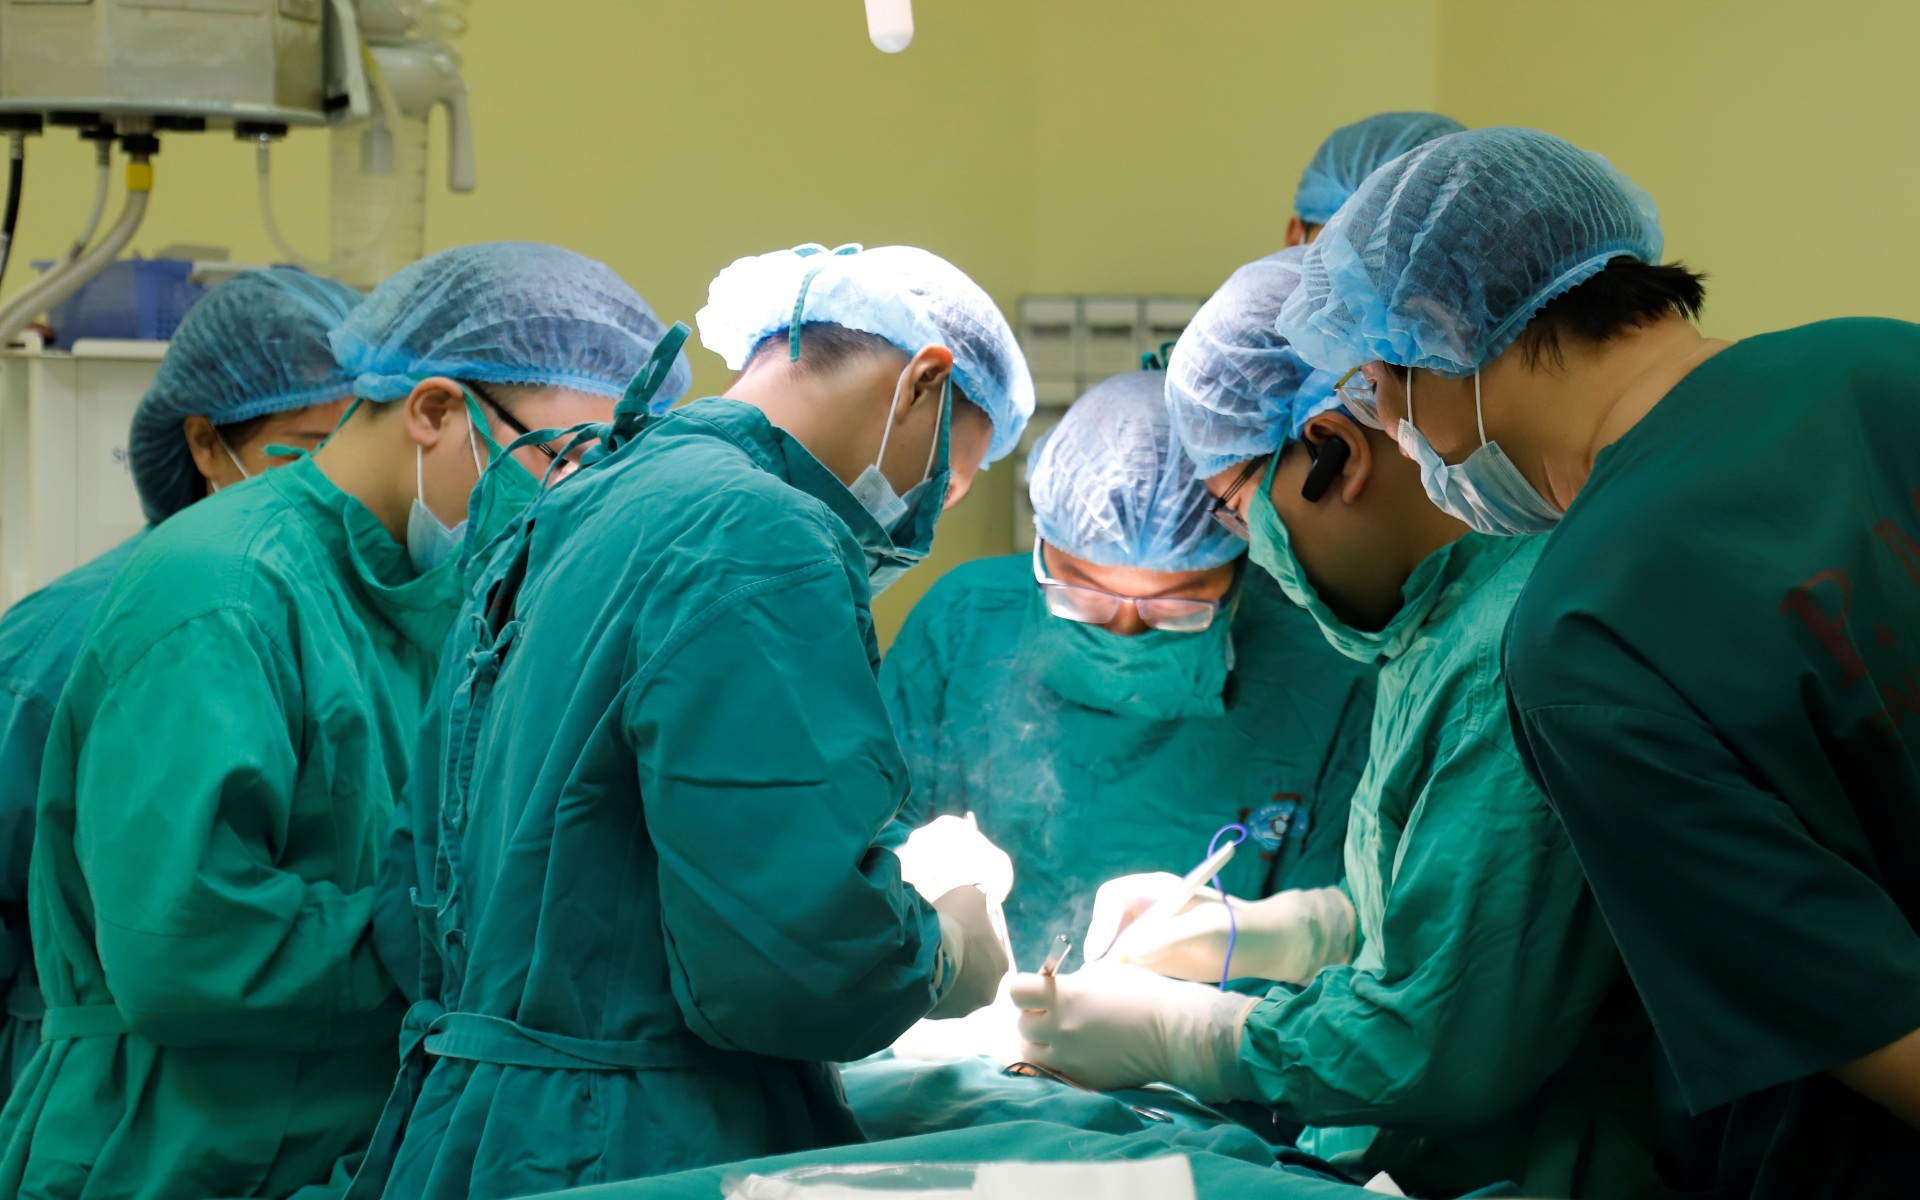 Chuyển bệnh viện trung ương cho Hà Nội "quản": Sẽ tác động đến hệ thống y tế của toàn quốc